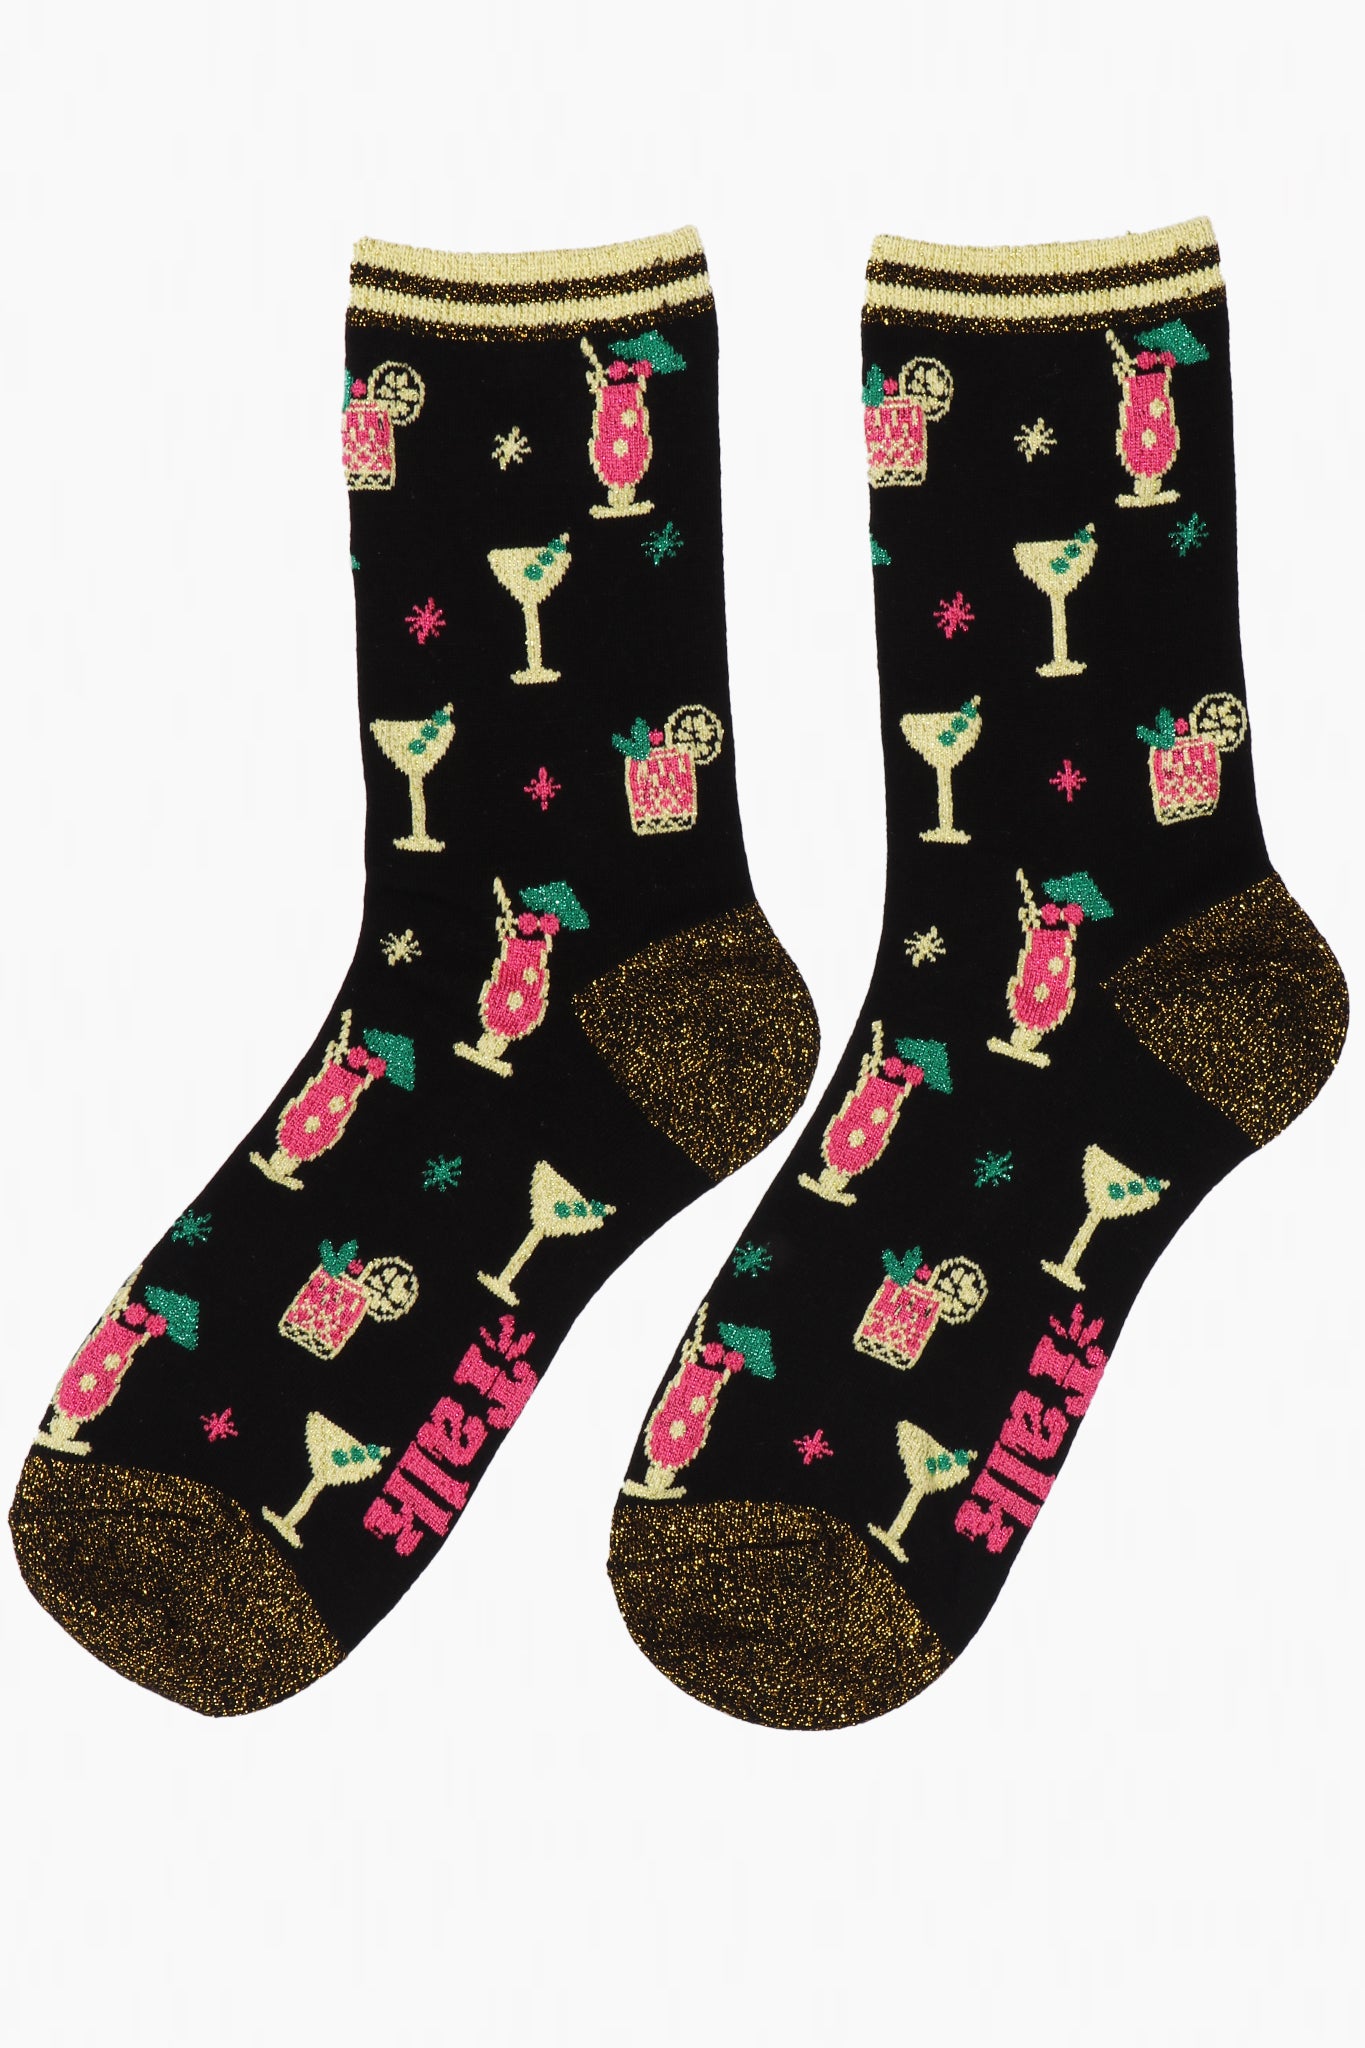 Women's Glitter Bamboo Socks Cocktail Party Novelty Ankle Socks